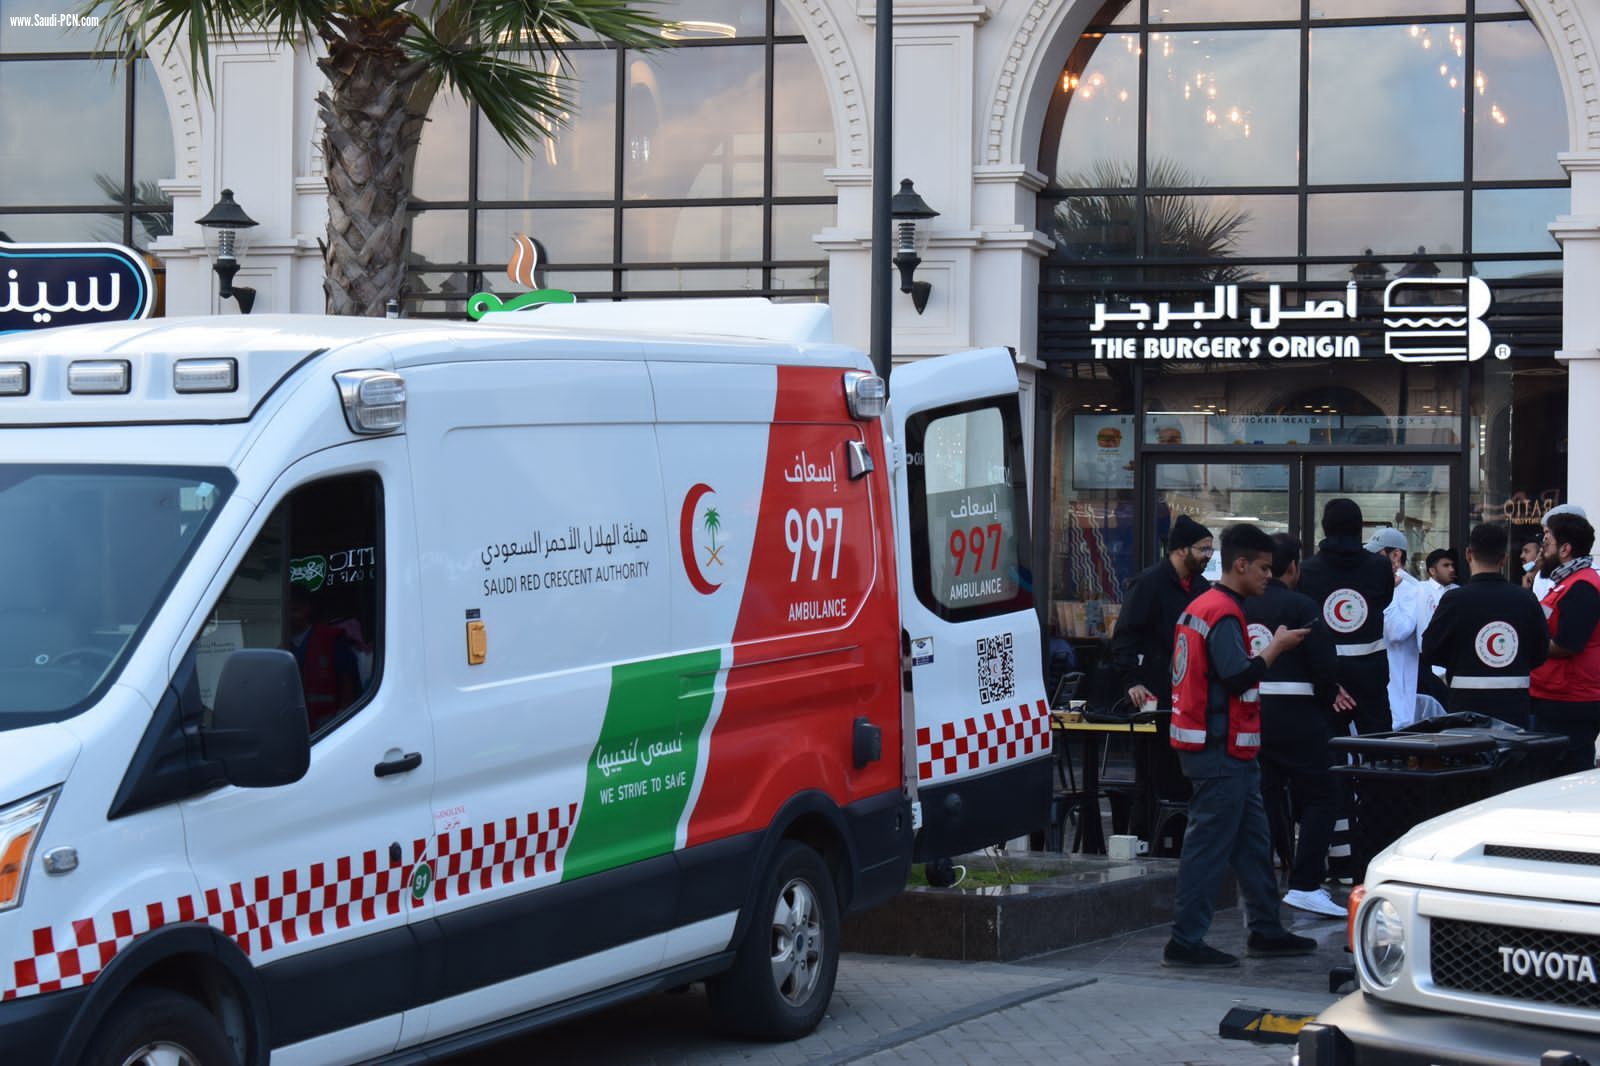 هلال الباحة يحتفى بفعاليات اليوم العالمي للهلال الأحمر والصليب الأحمر 